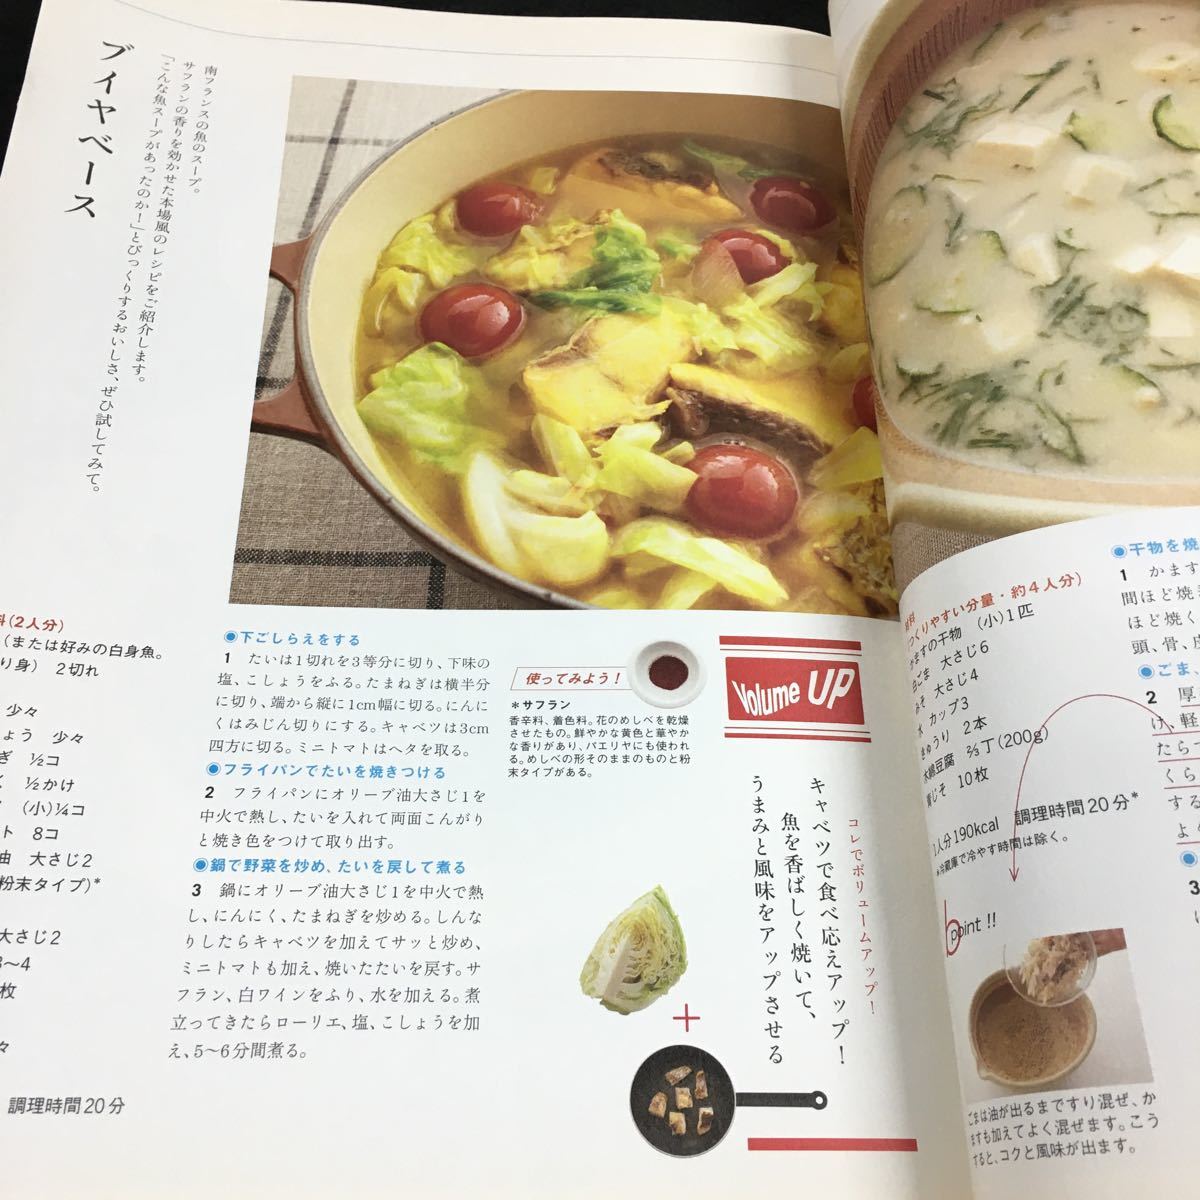 h-500 NHK(b)きょうの料理 ビギナーズ 2009.10 特集 食べるスープ 今月のTV 一皿で十分 秋のおかずスープ 2009年10月1日 発行 ※8_画像3